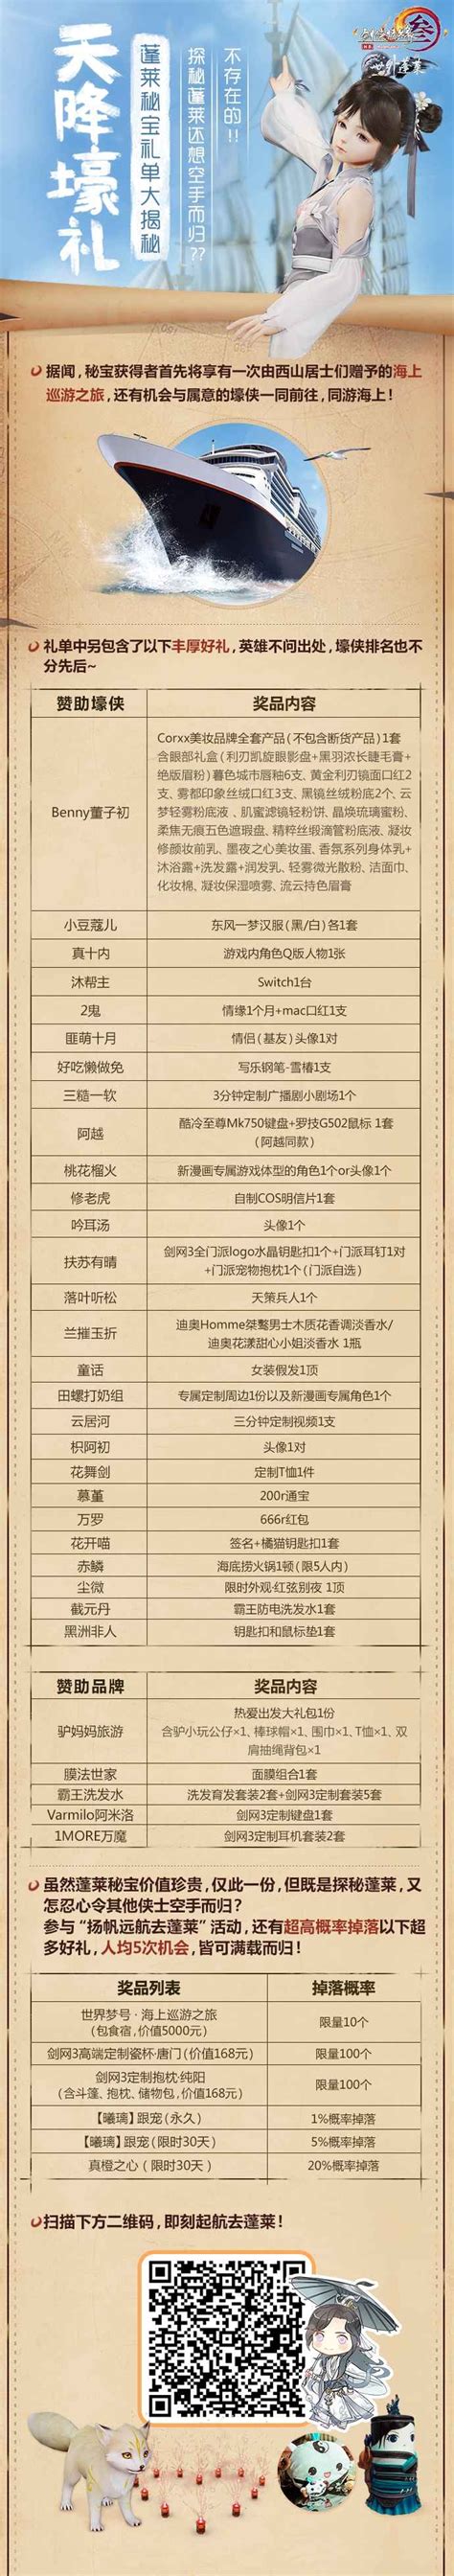 新赛季预约破300万 《剑网3》一起去蓬莱H5上线_国内游戏新闻-叶子猪新闻中心